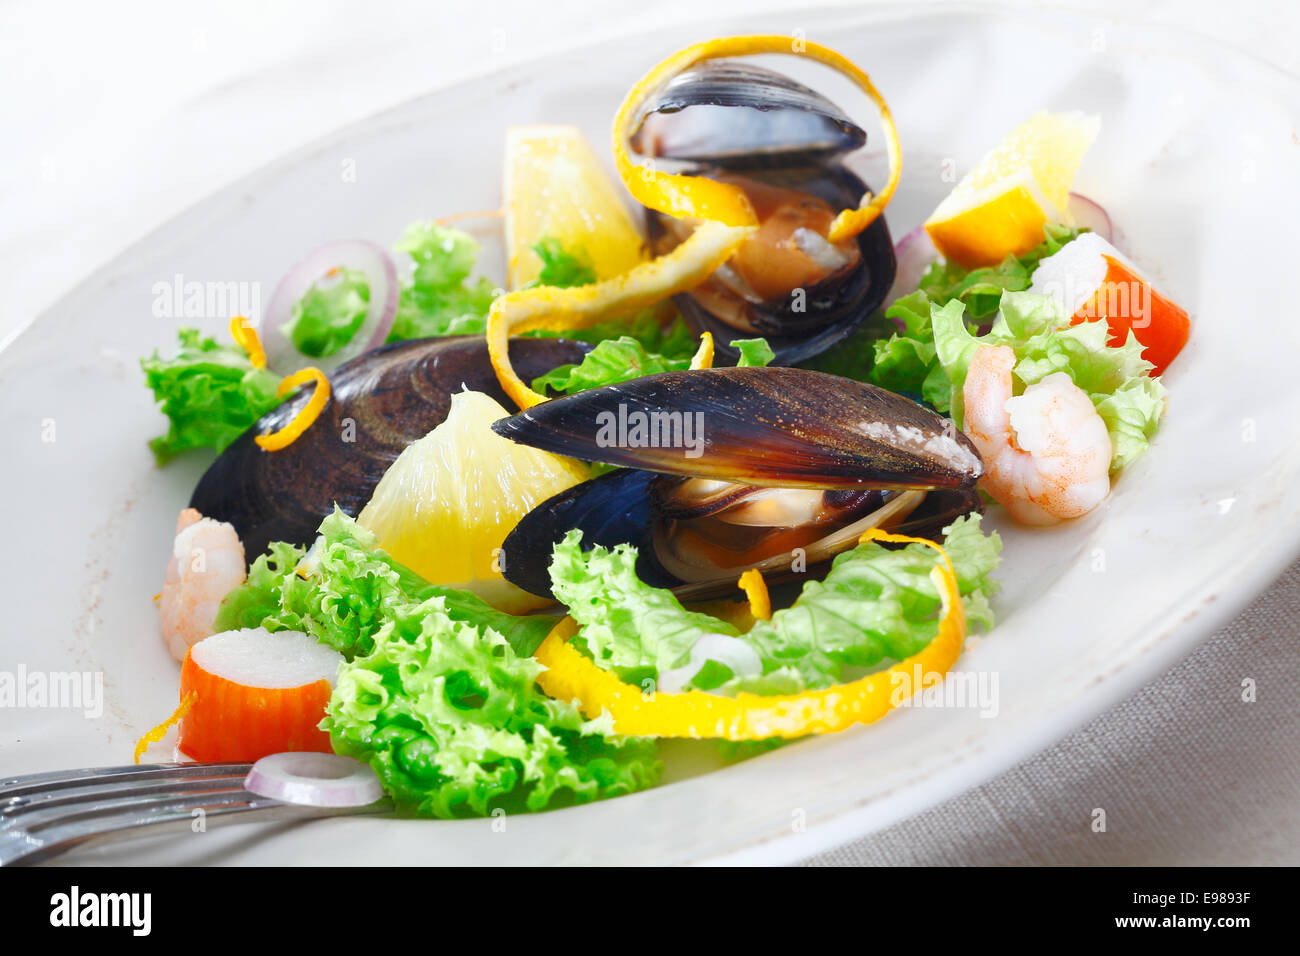 Servant de délicieux fruits de mer salade avec les moules, les crabes et les crevettes sur un lit de salade verte croquante garnie avec orange peel Banque D'Images